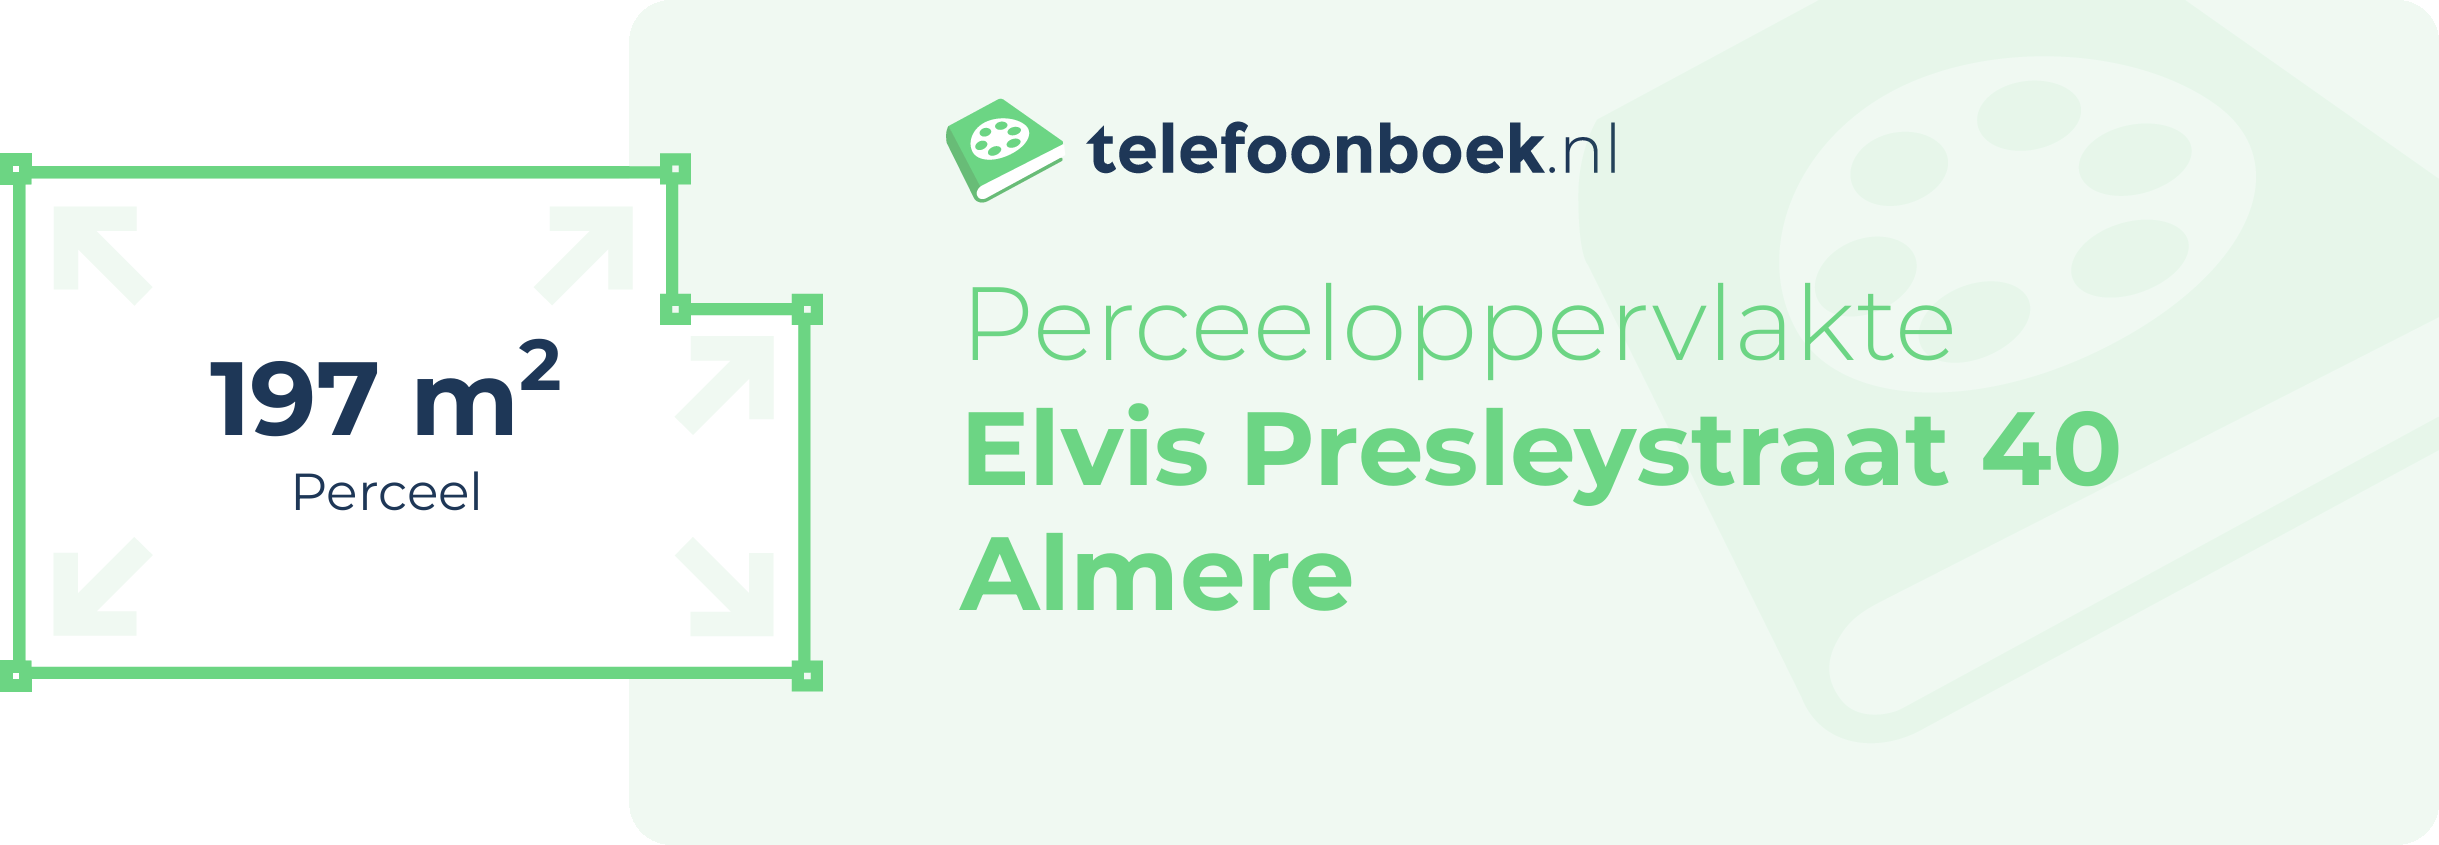 Perceeloppervlakte Elvis Presleystraat 40 Almere